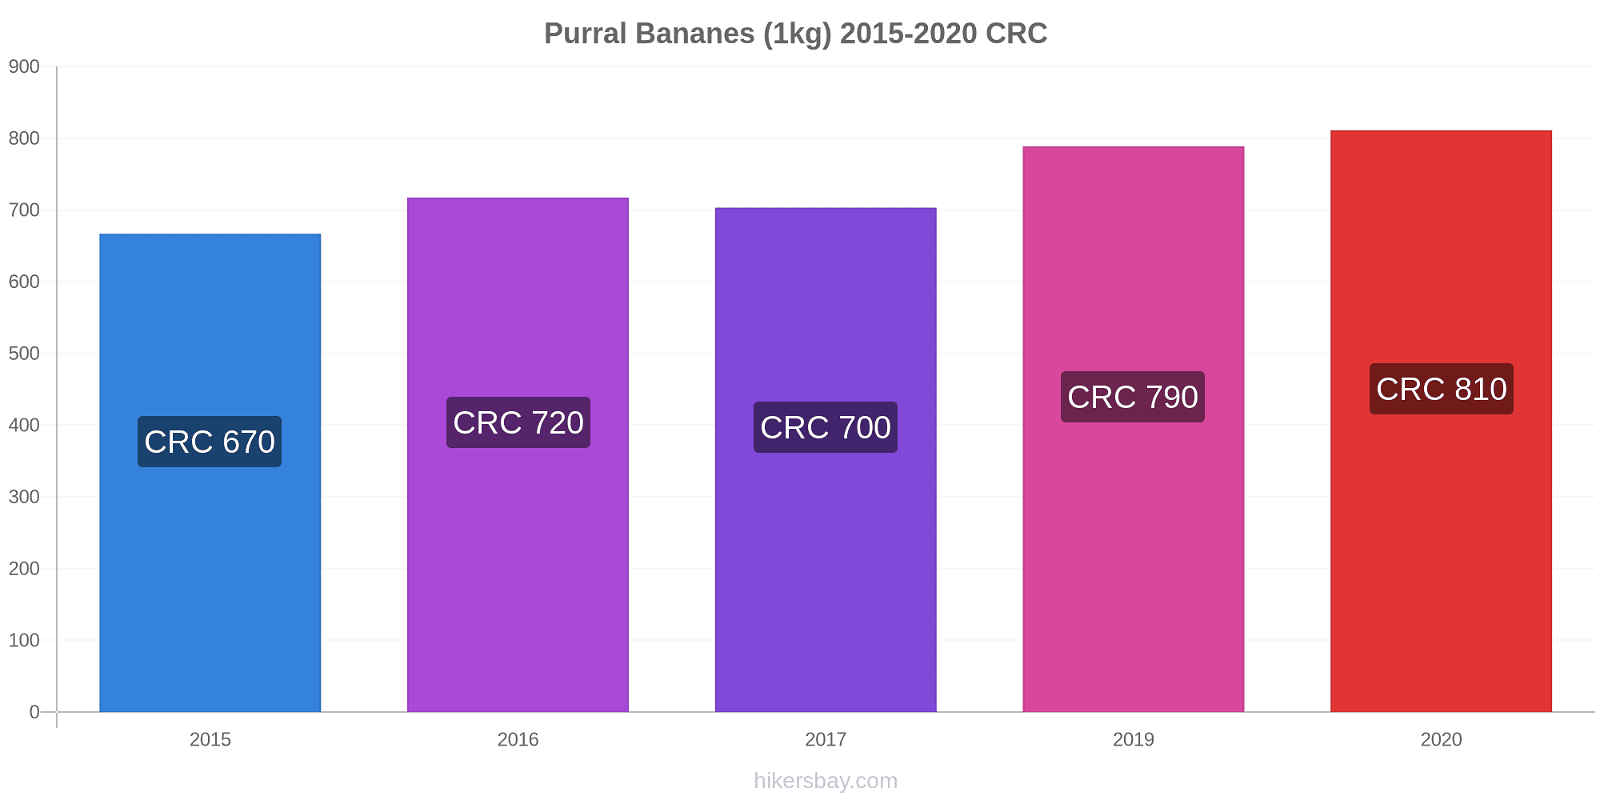 Purral changements de prix Bananes (1kg) hikersbay.com